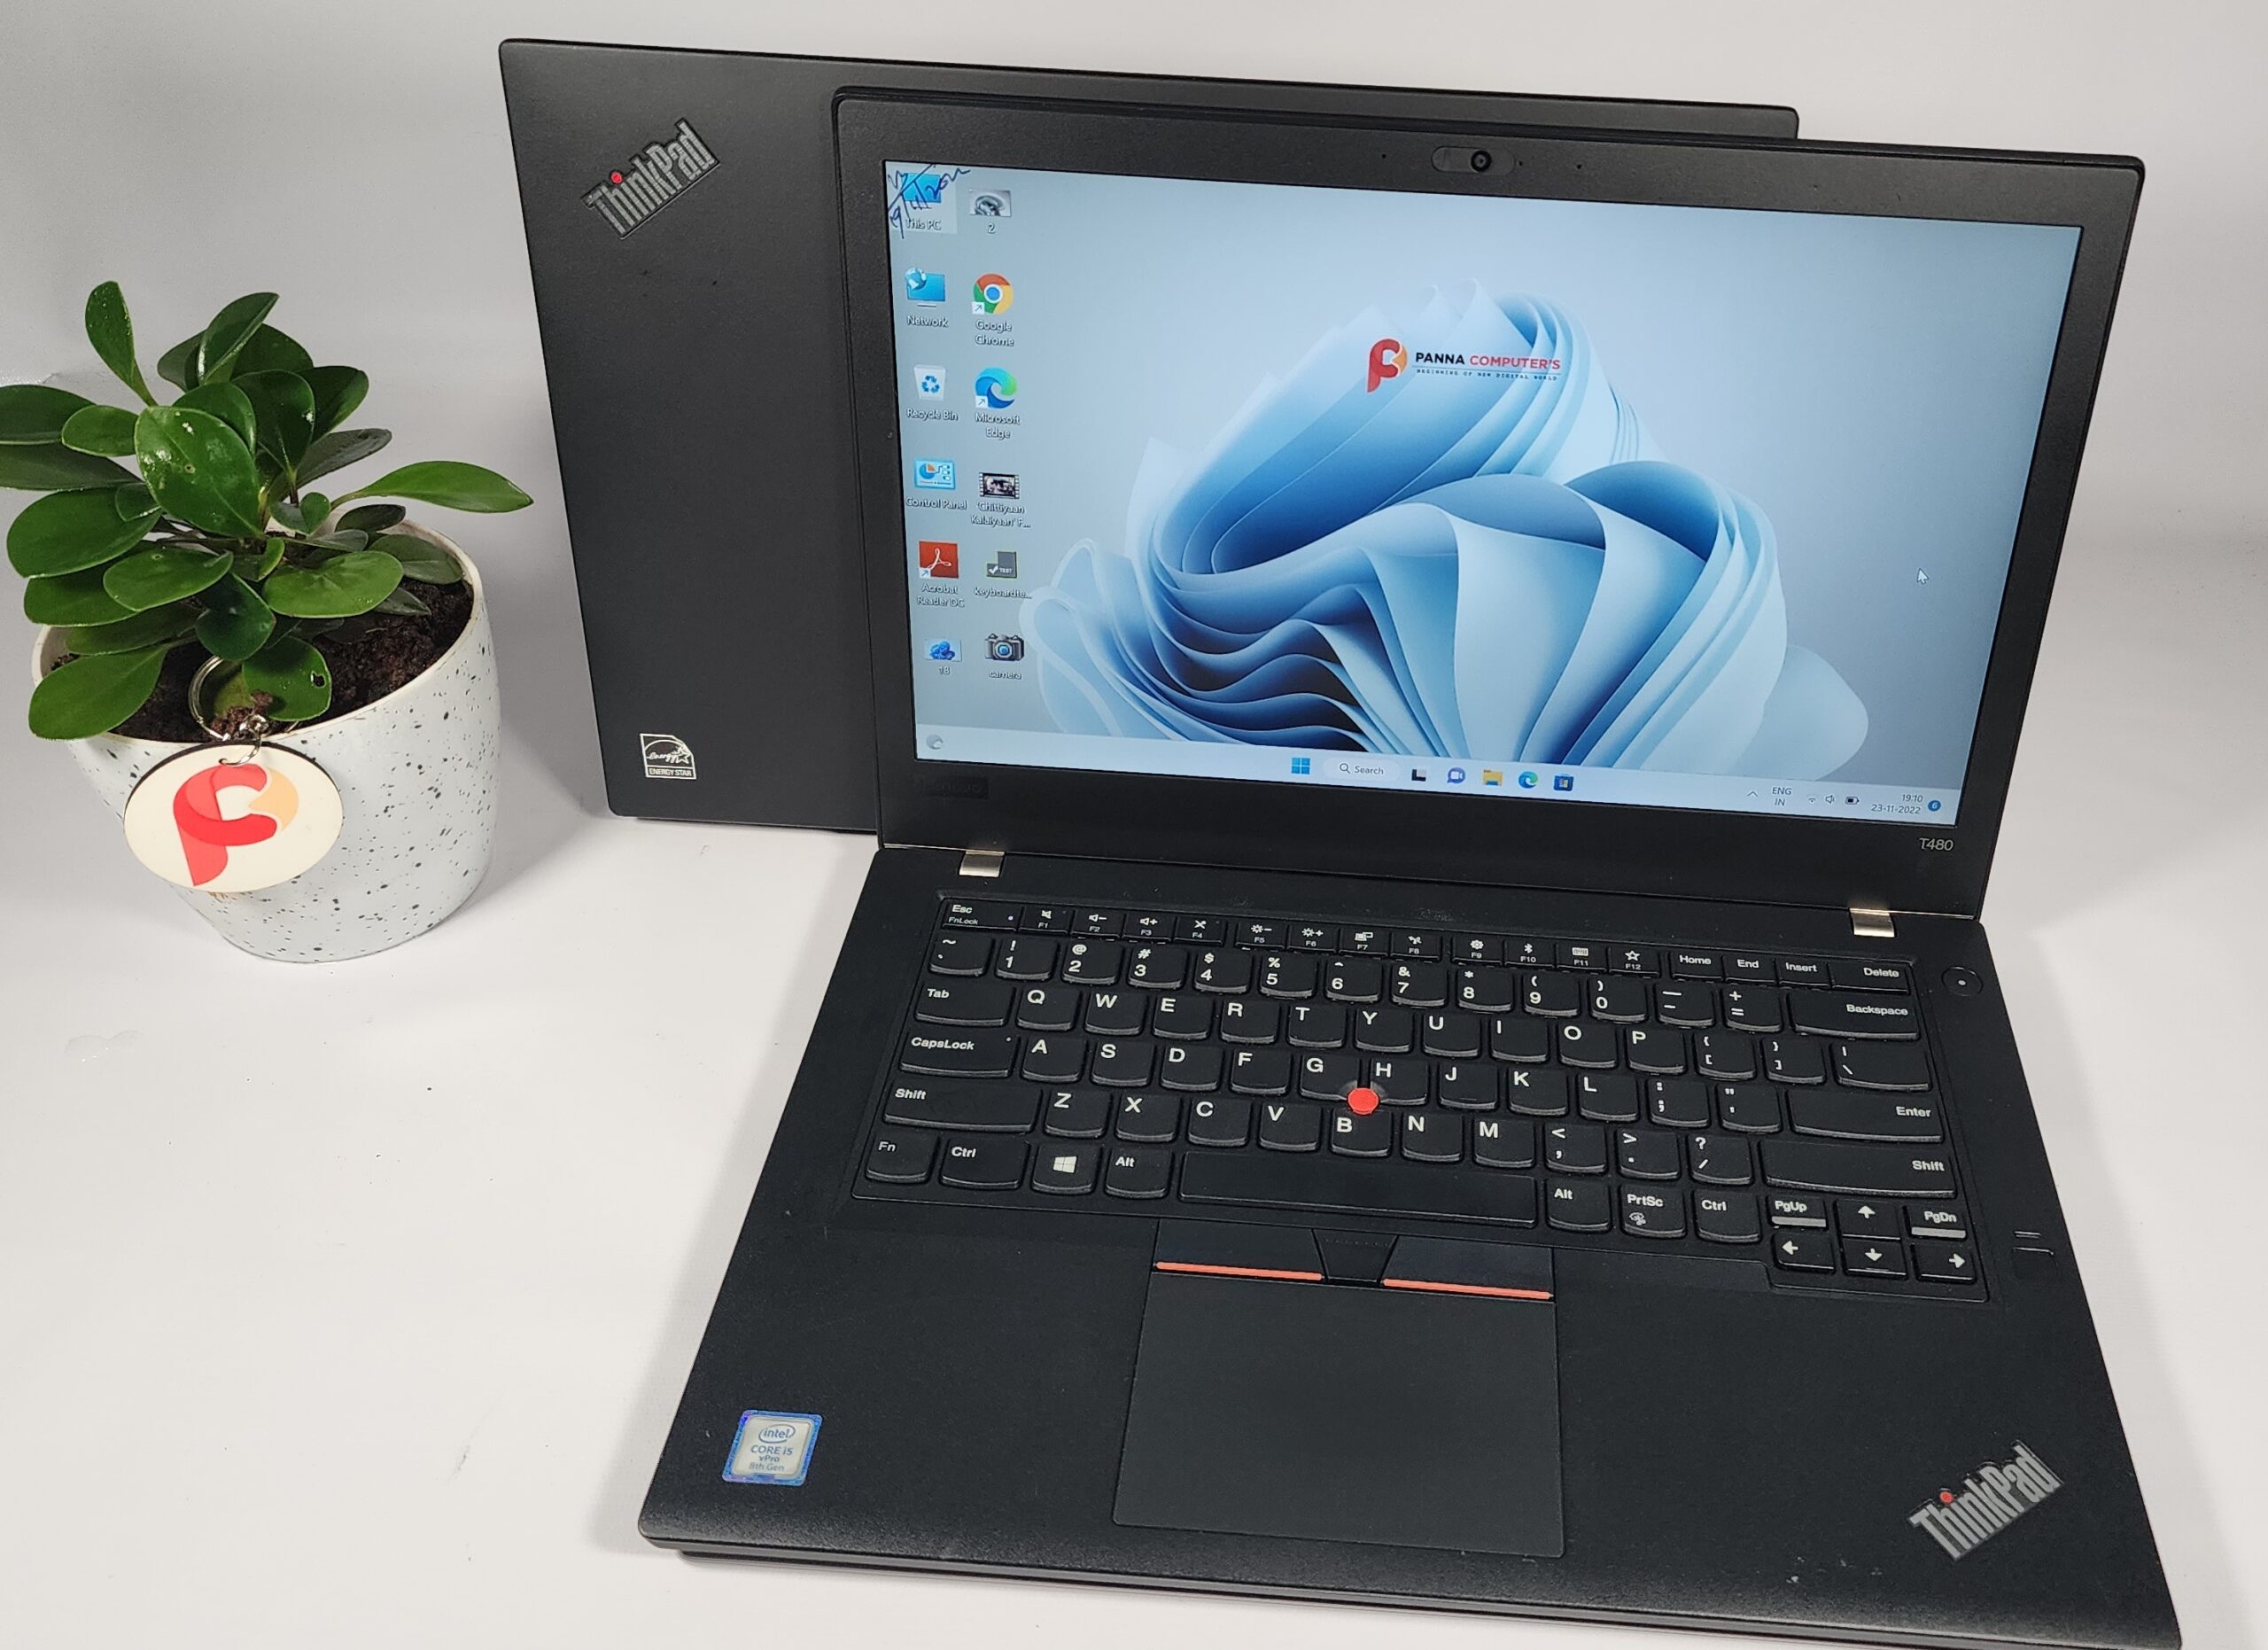 Lenovo ThinkPad T480 - Panna Computers